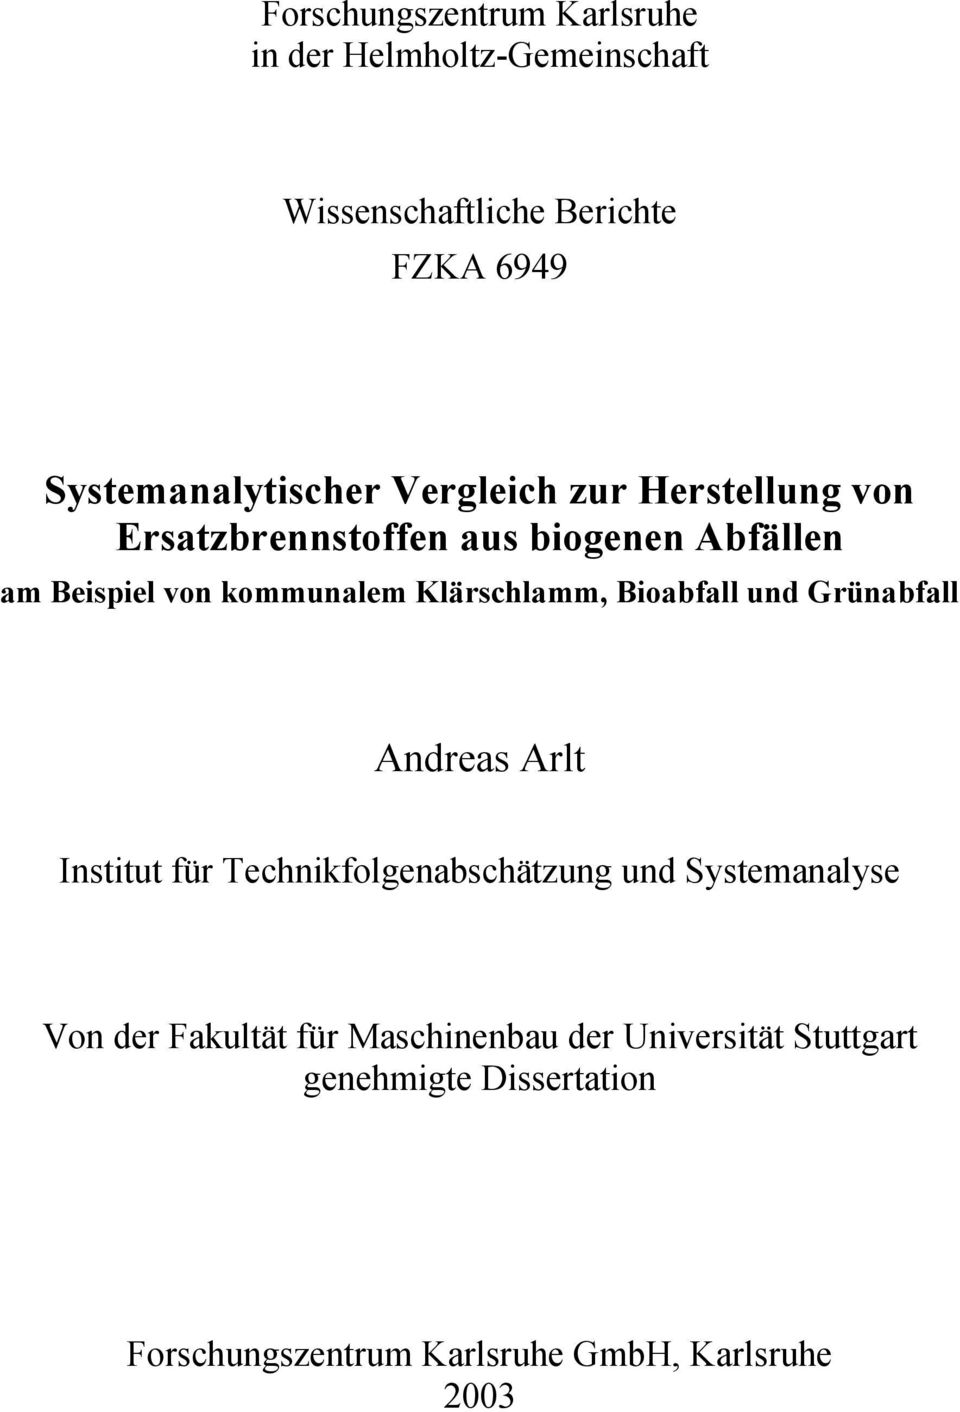 kommunalem Klärschlamm, Bioabfall und Grünabfall Andreas Arlt Institut für Technikfolgenabschätzung und